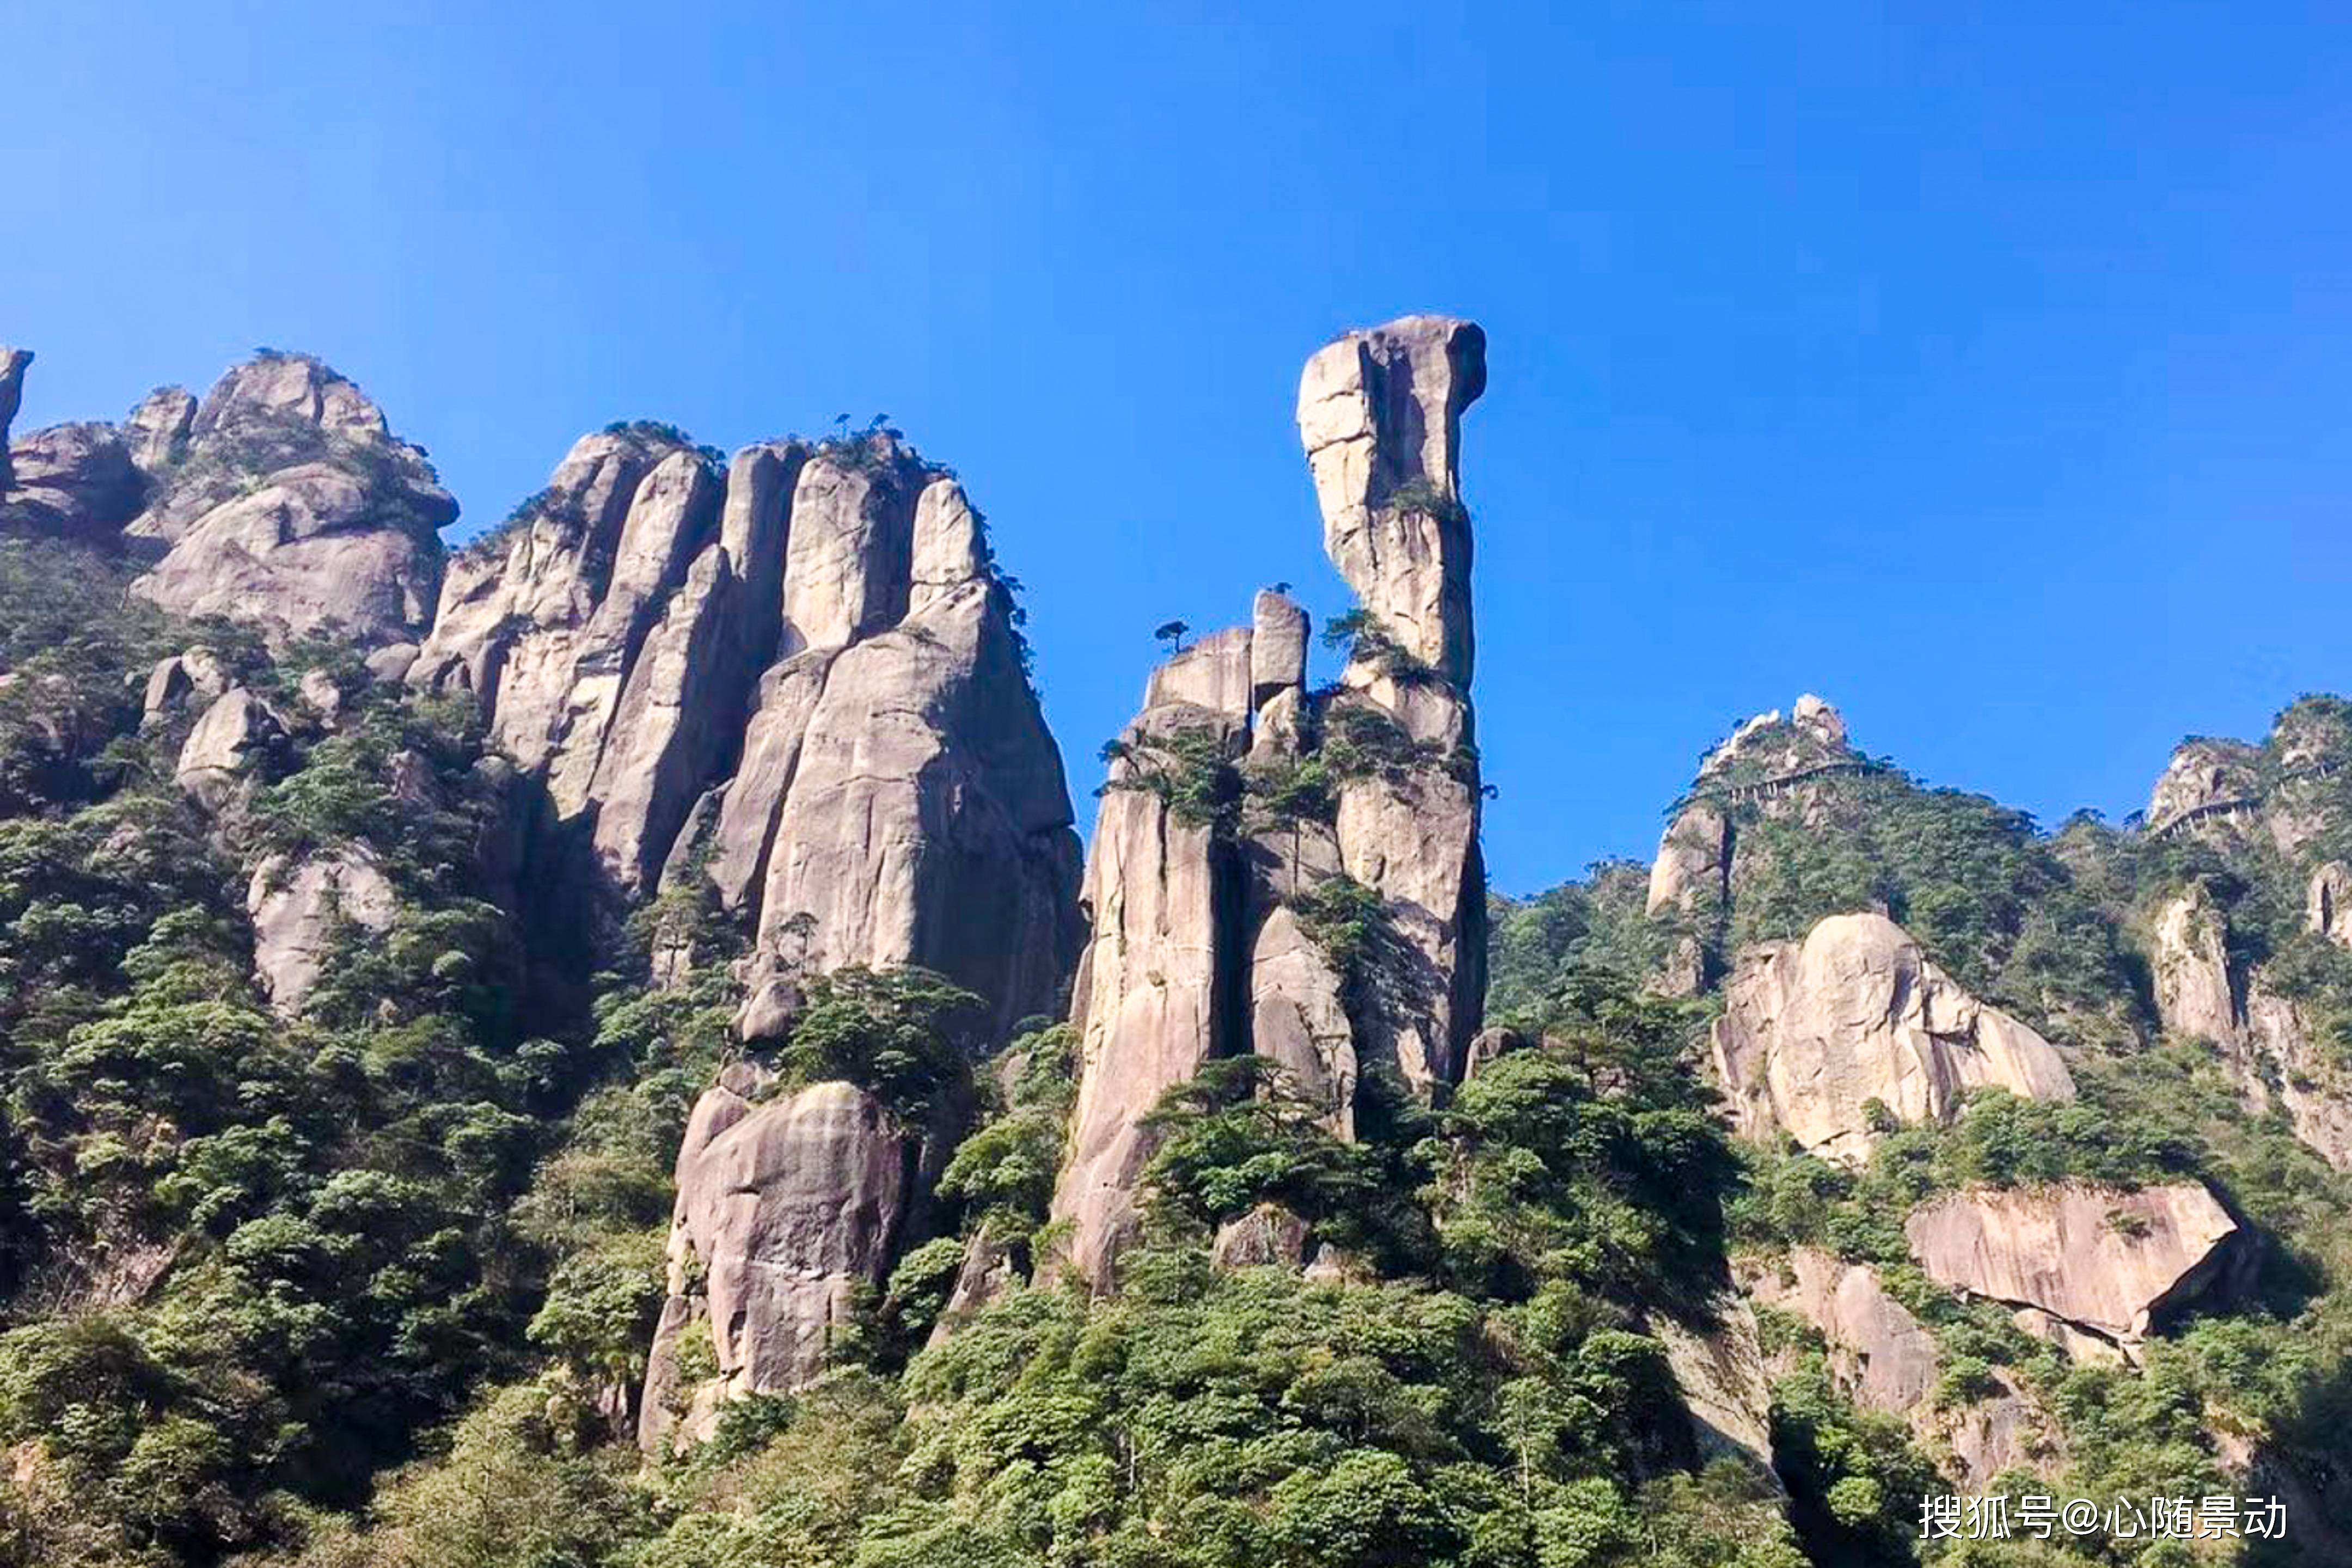 原创江西有一座名山,被誉为"天下第一仙山",景色可媲美黄山